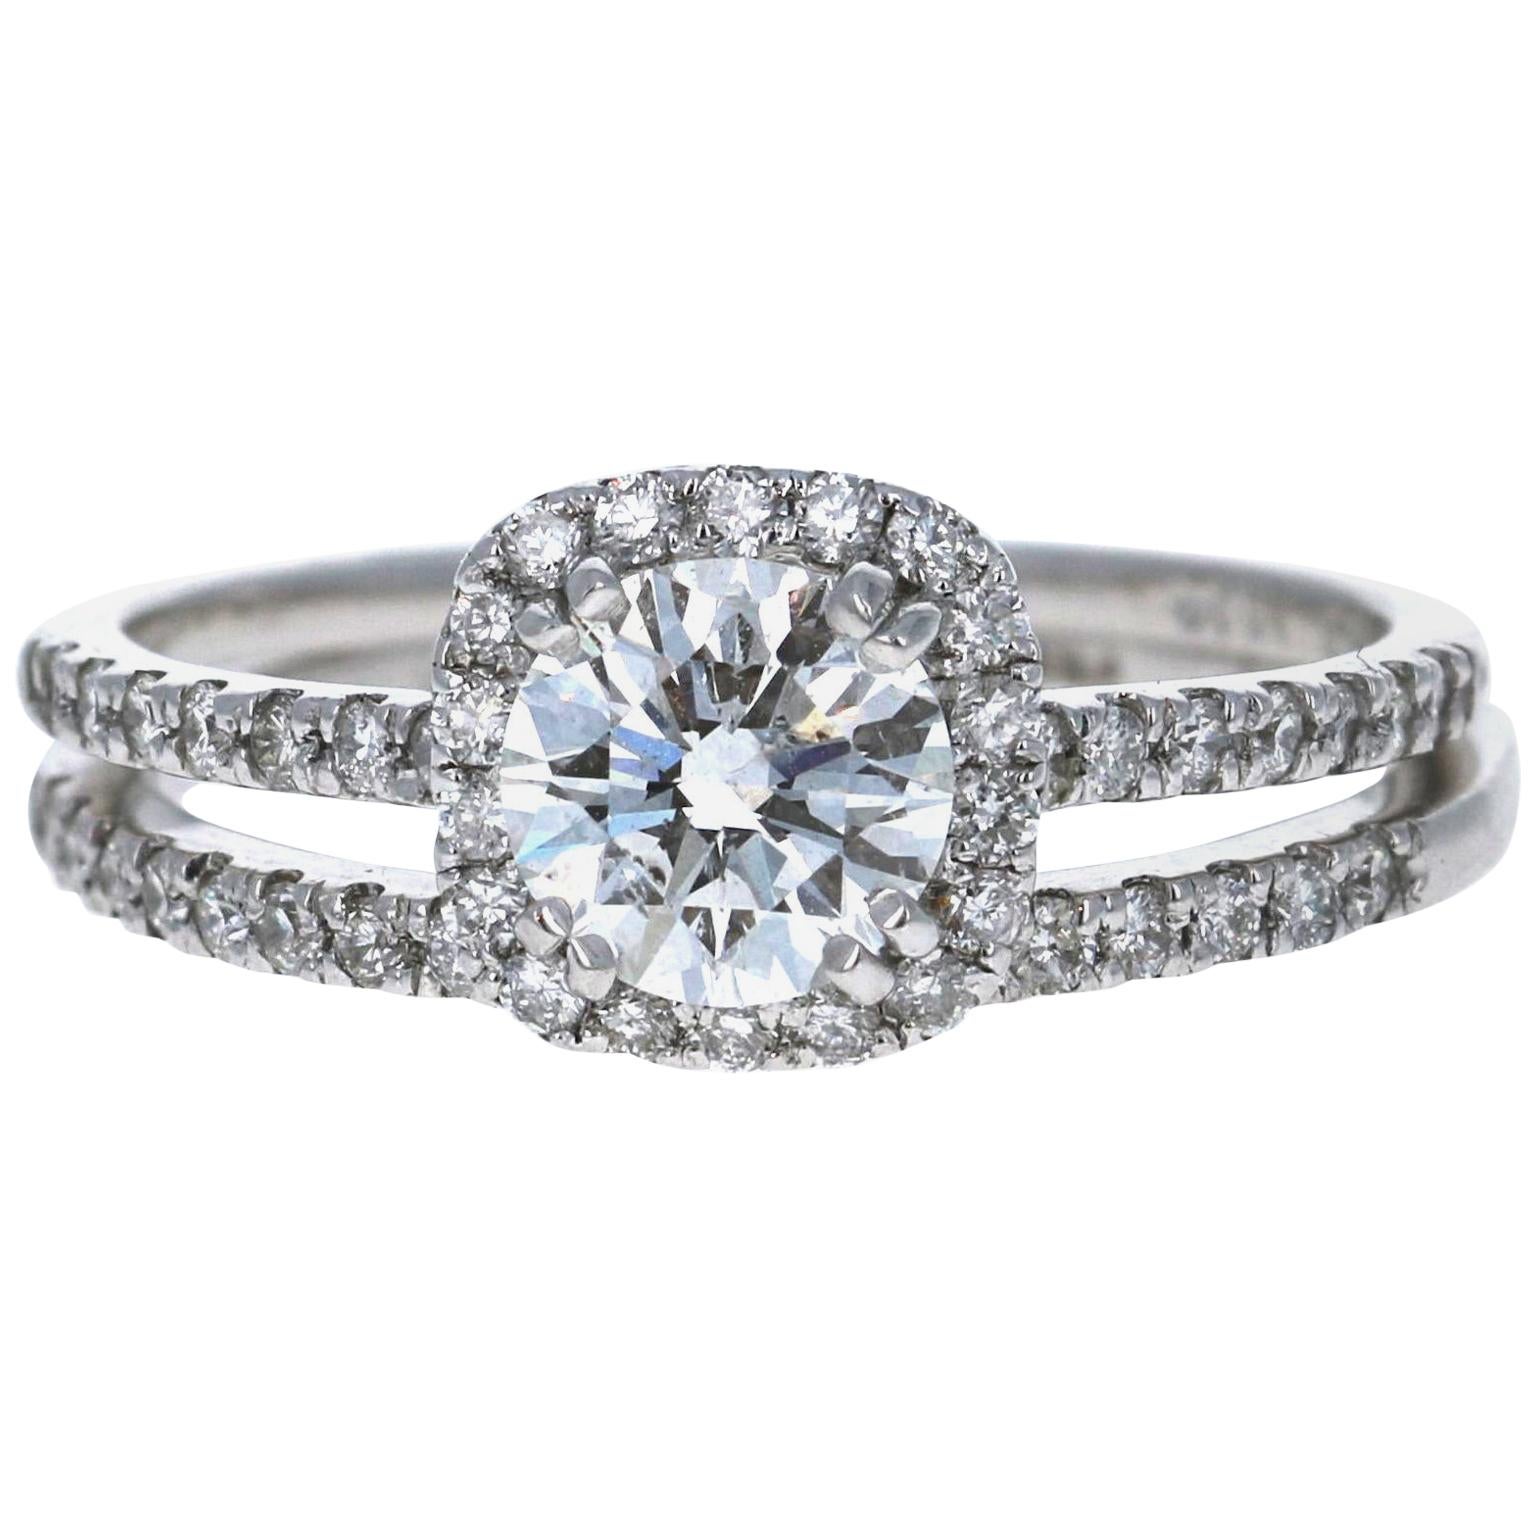 1.34 Carat Diamond Engagement Ring 14 Karat White Gold